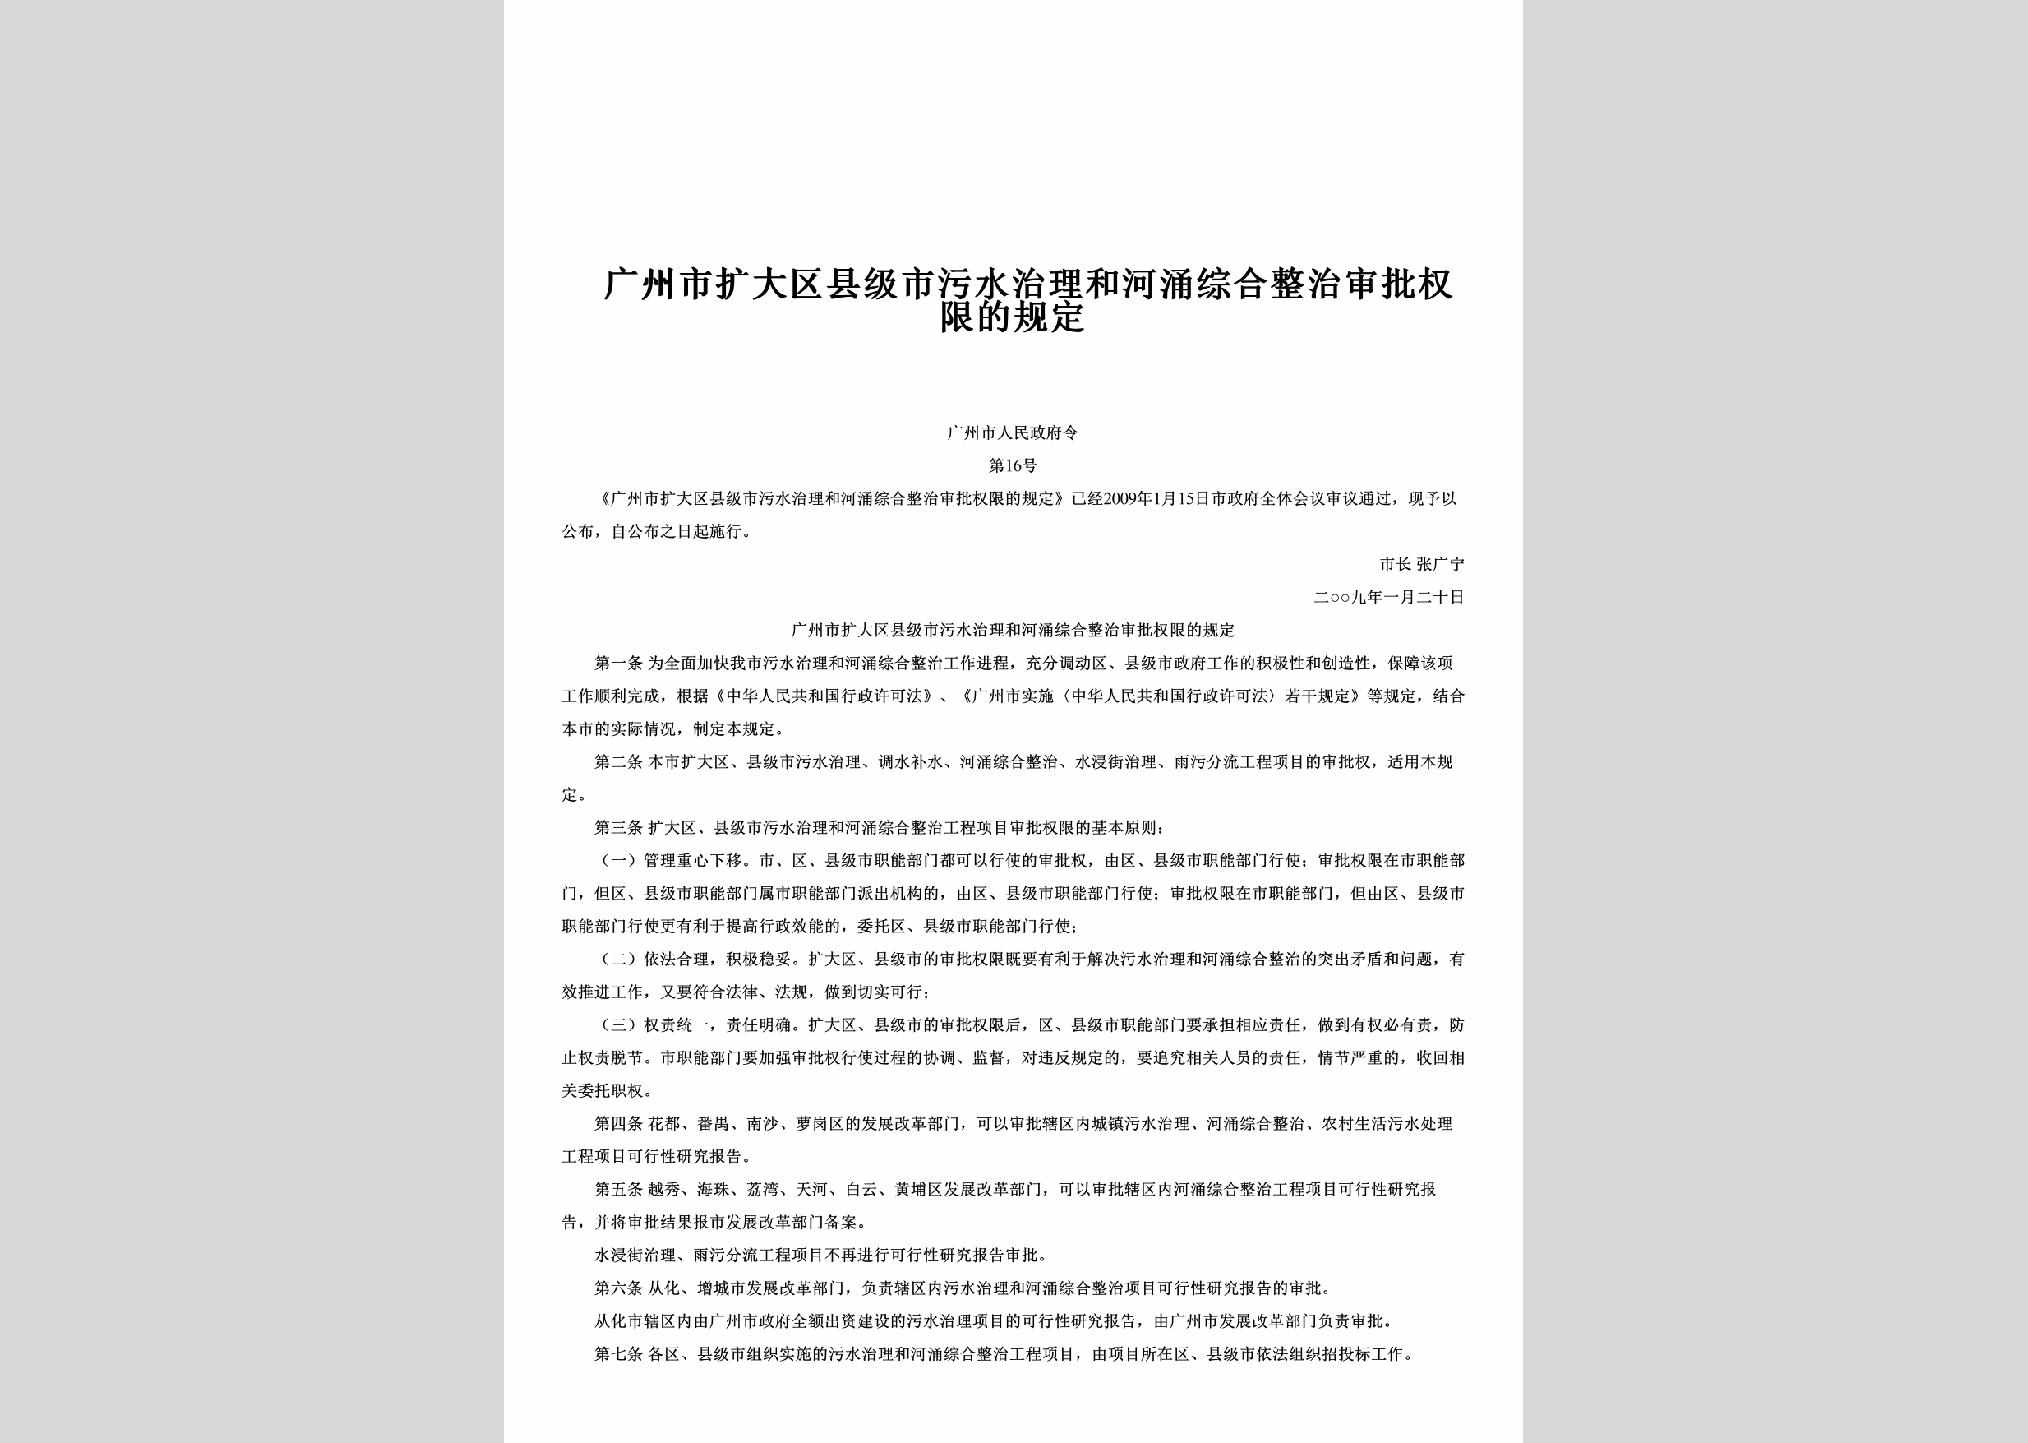 广州市人民政府令第16号：广州市扩大区县级市污水治理和河涌综合整治审批权限的规定